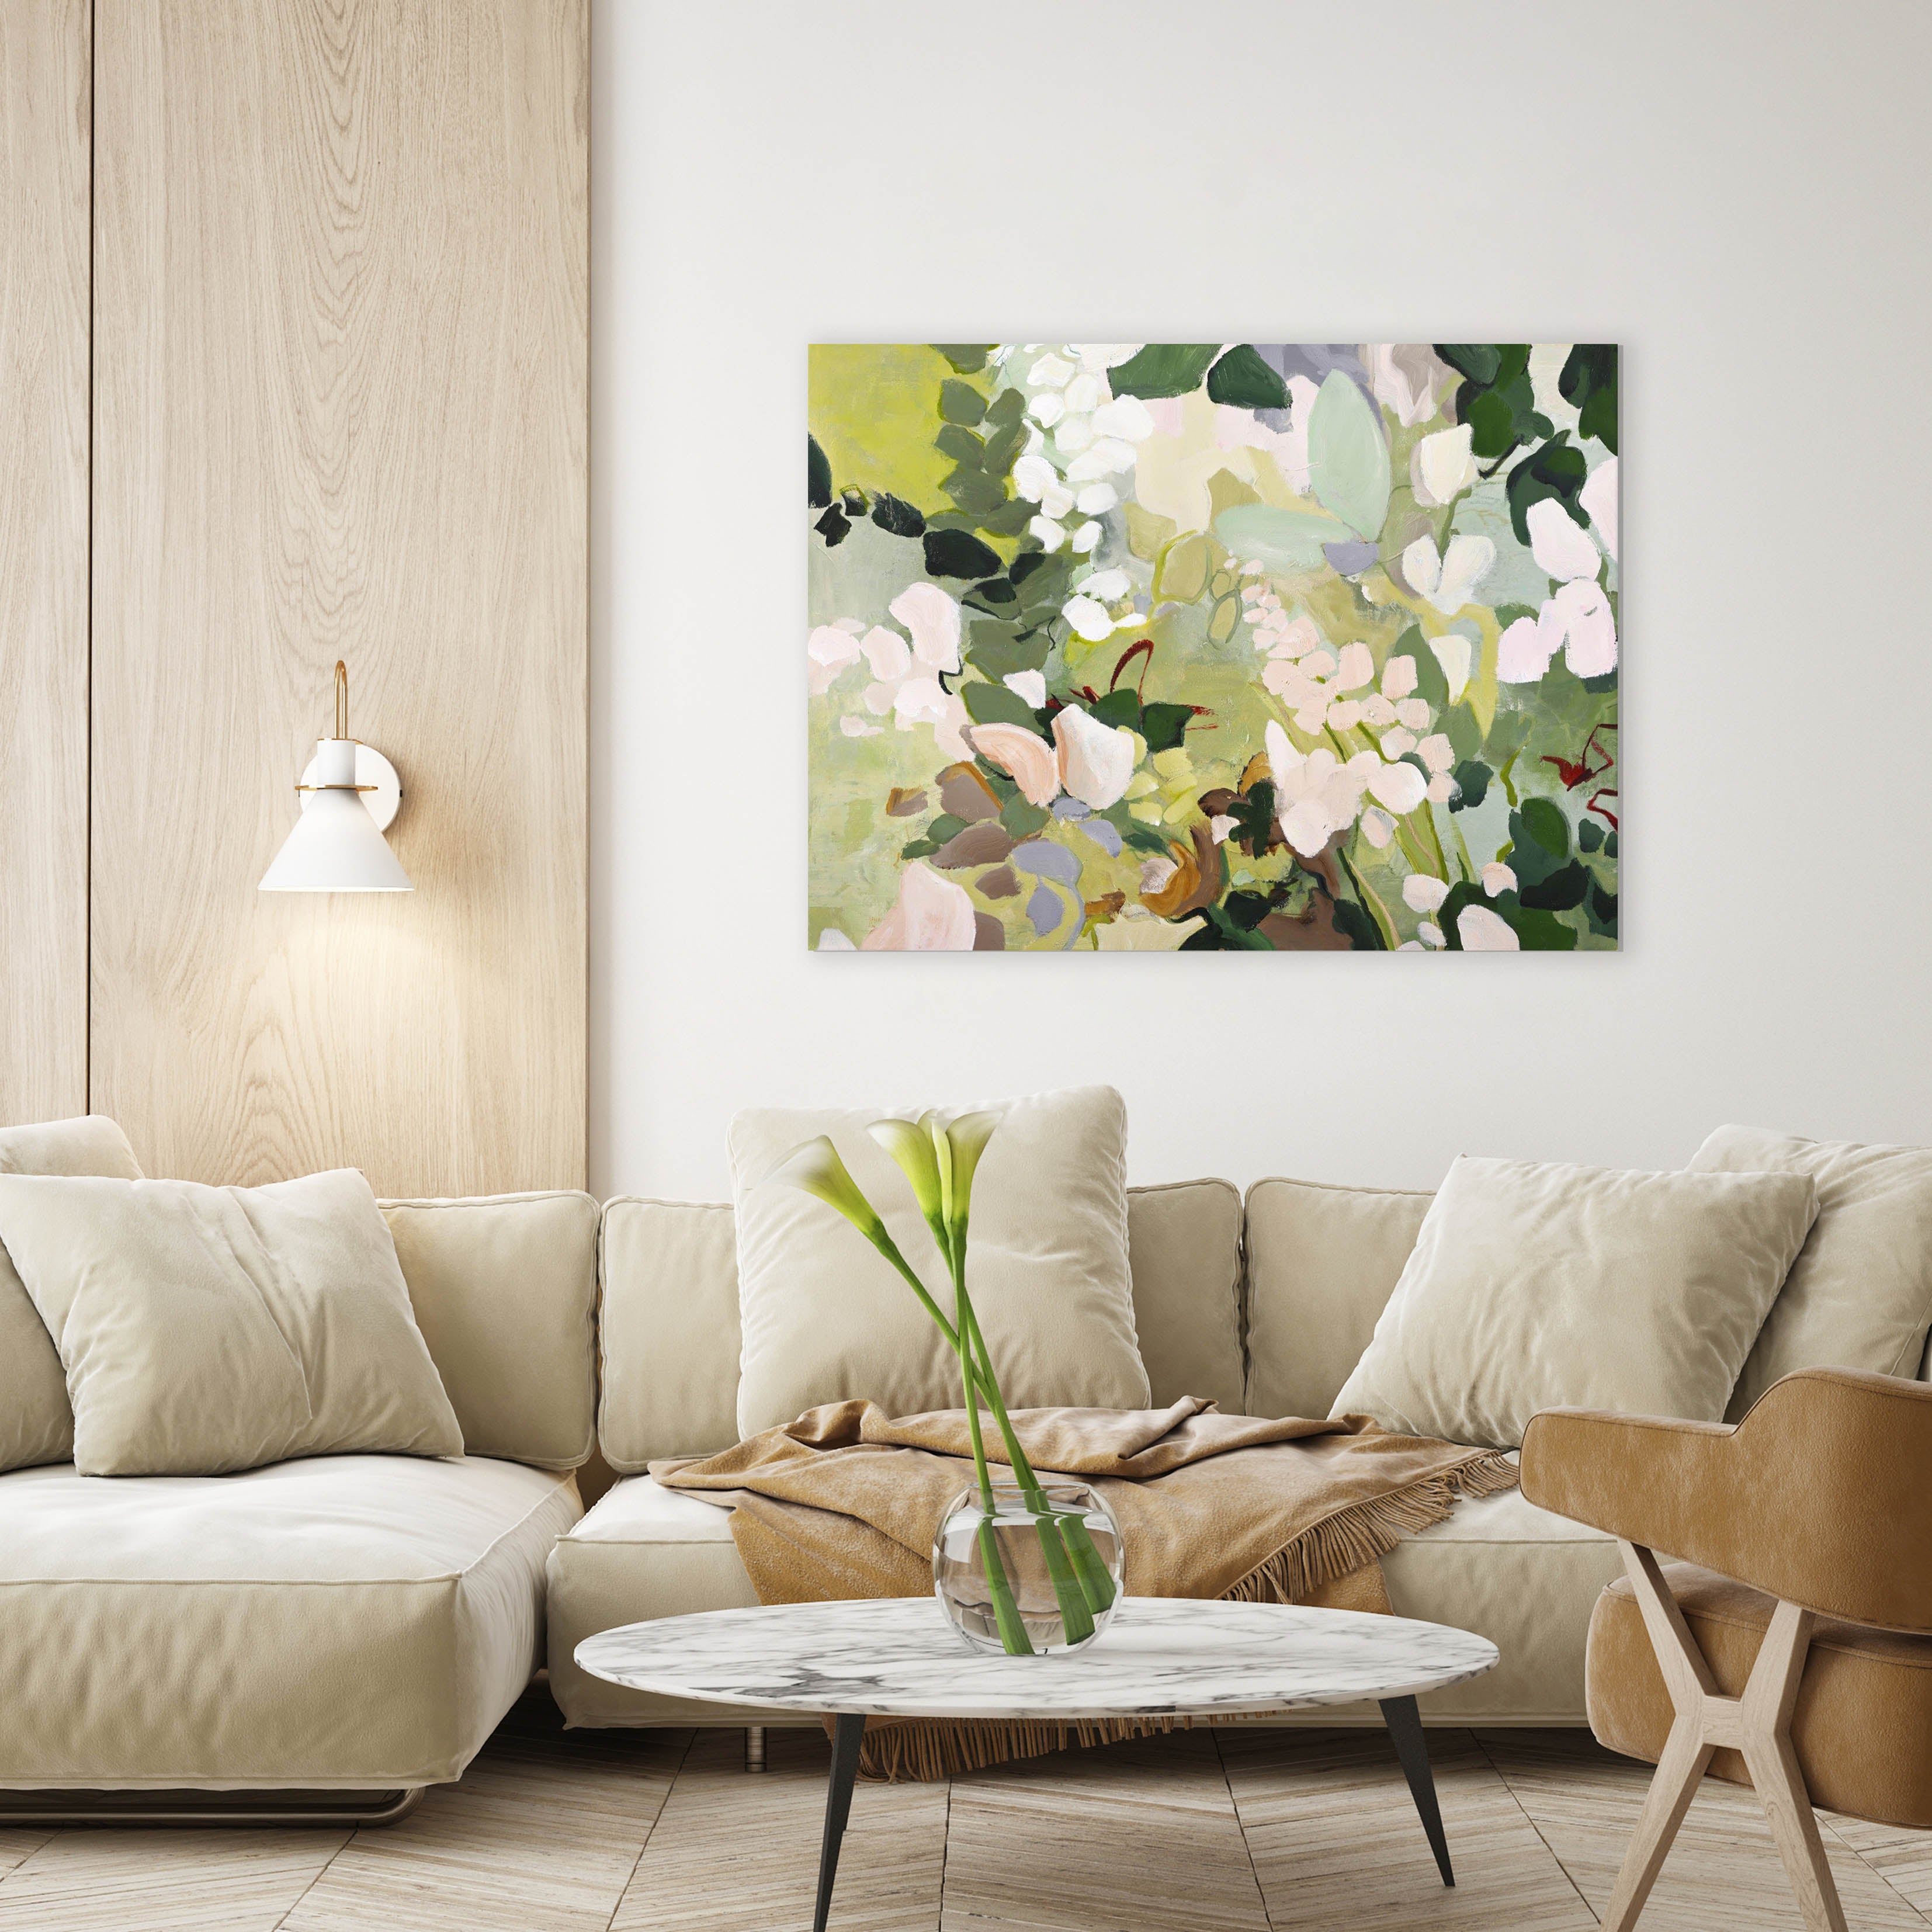 Green garden | Maleri & kunsttryk Maleri & kunsttryk ART COPENHAGEN 90x120  